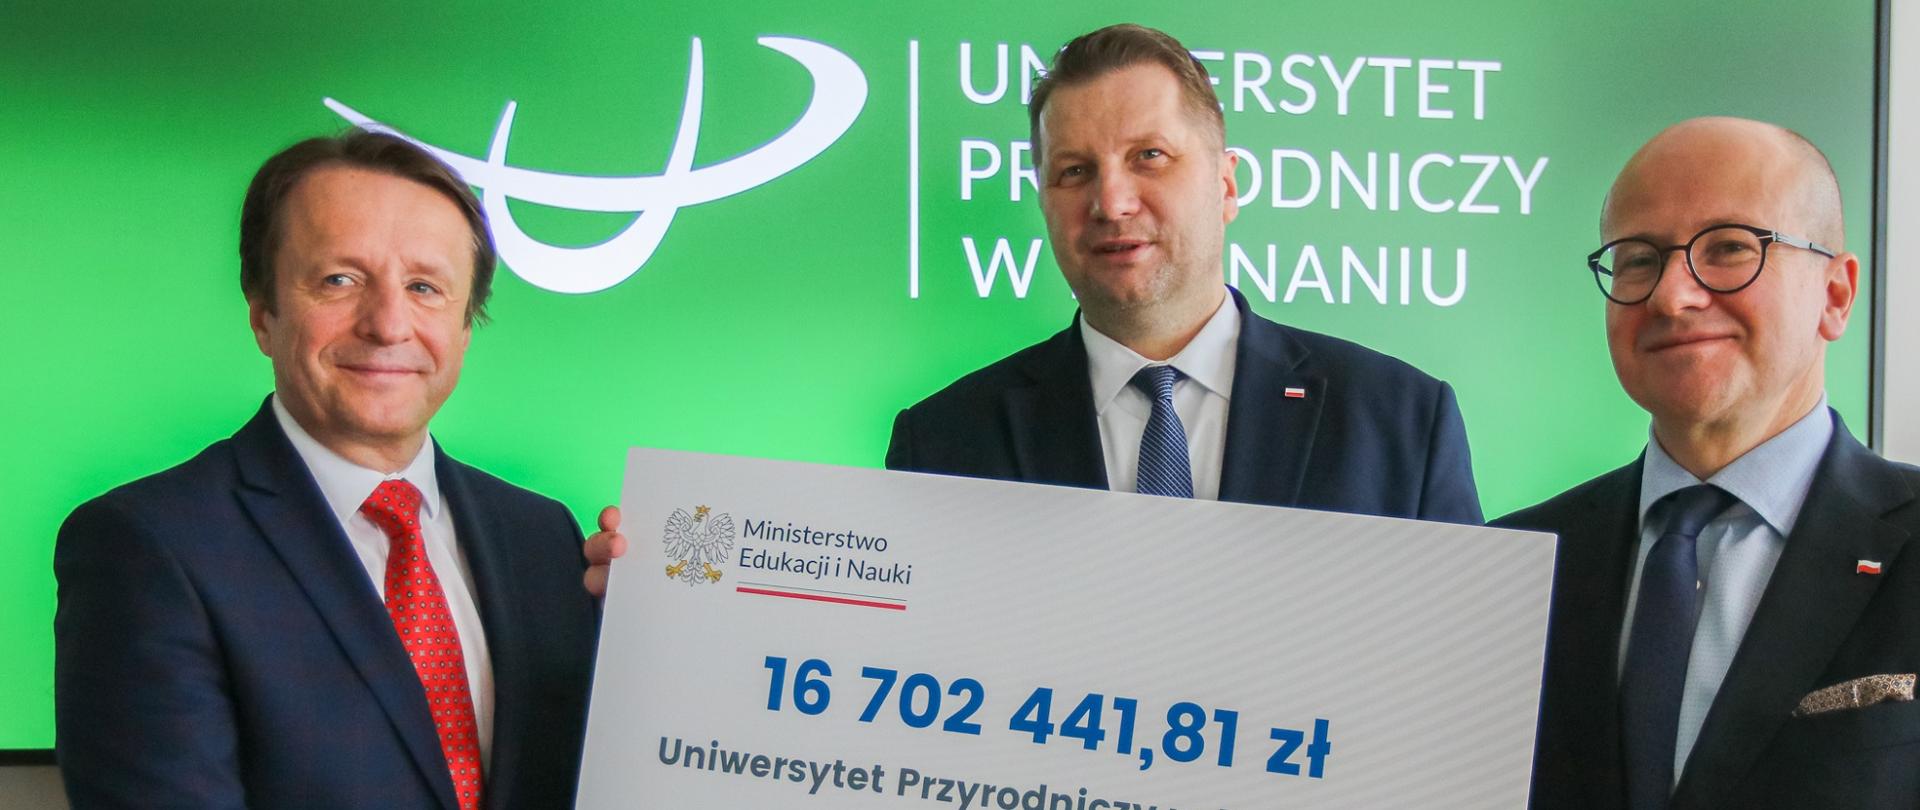 Minister Czarnek stoi pomiędzy dwoma mężczyznami w garniturach, jeden z nich trzyma wielki symboliczny czek z napisem 16 702 441,81 zł, za nimi zielona ściana z napisem Uniwersytet Przyrodniczy w Poznaniu.